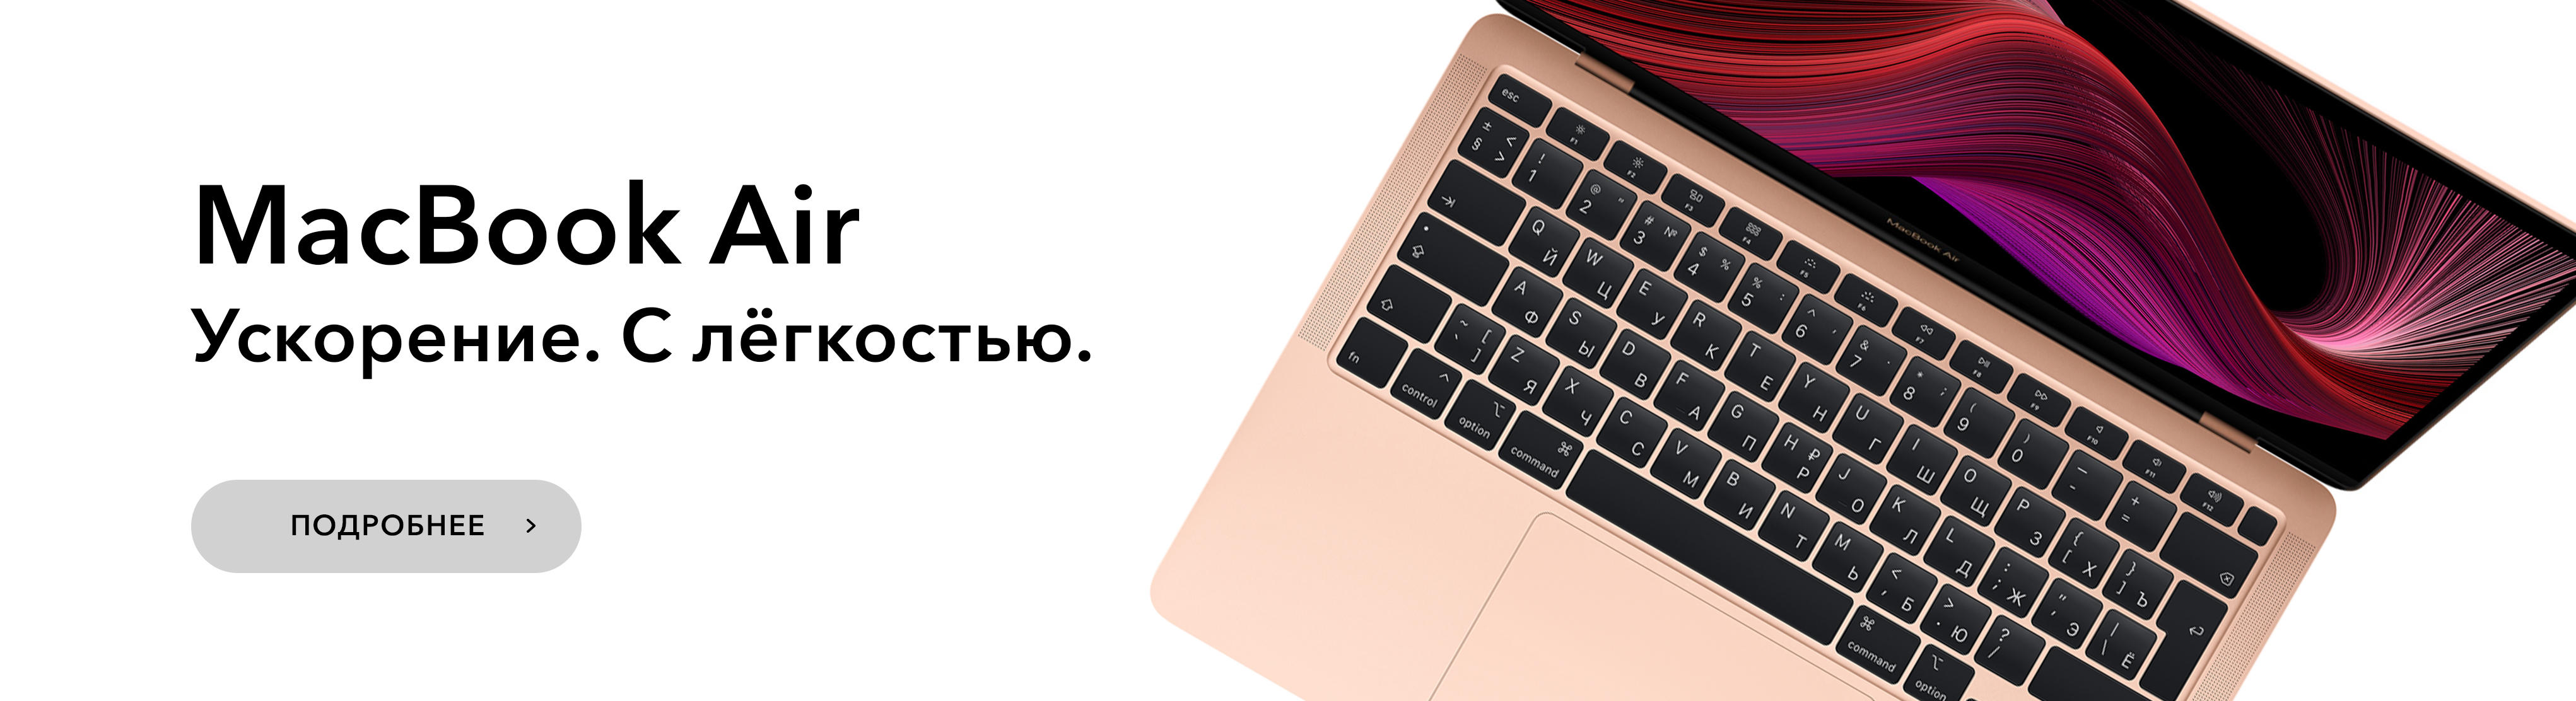 Купить Ноутбук В Кредит В Интернет Магазине В Волгограде